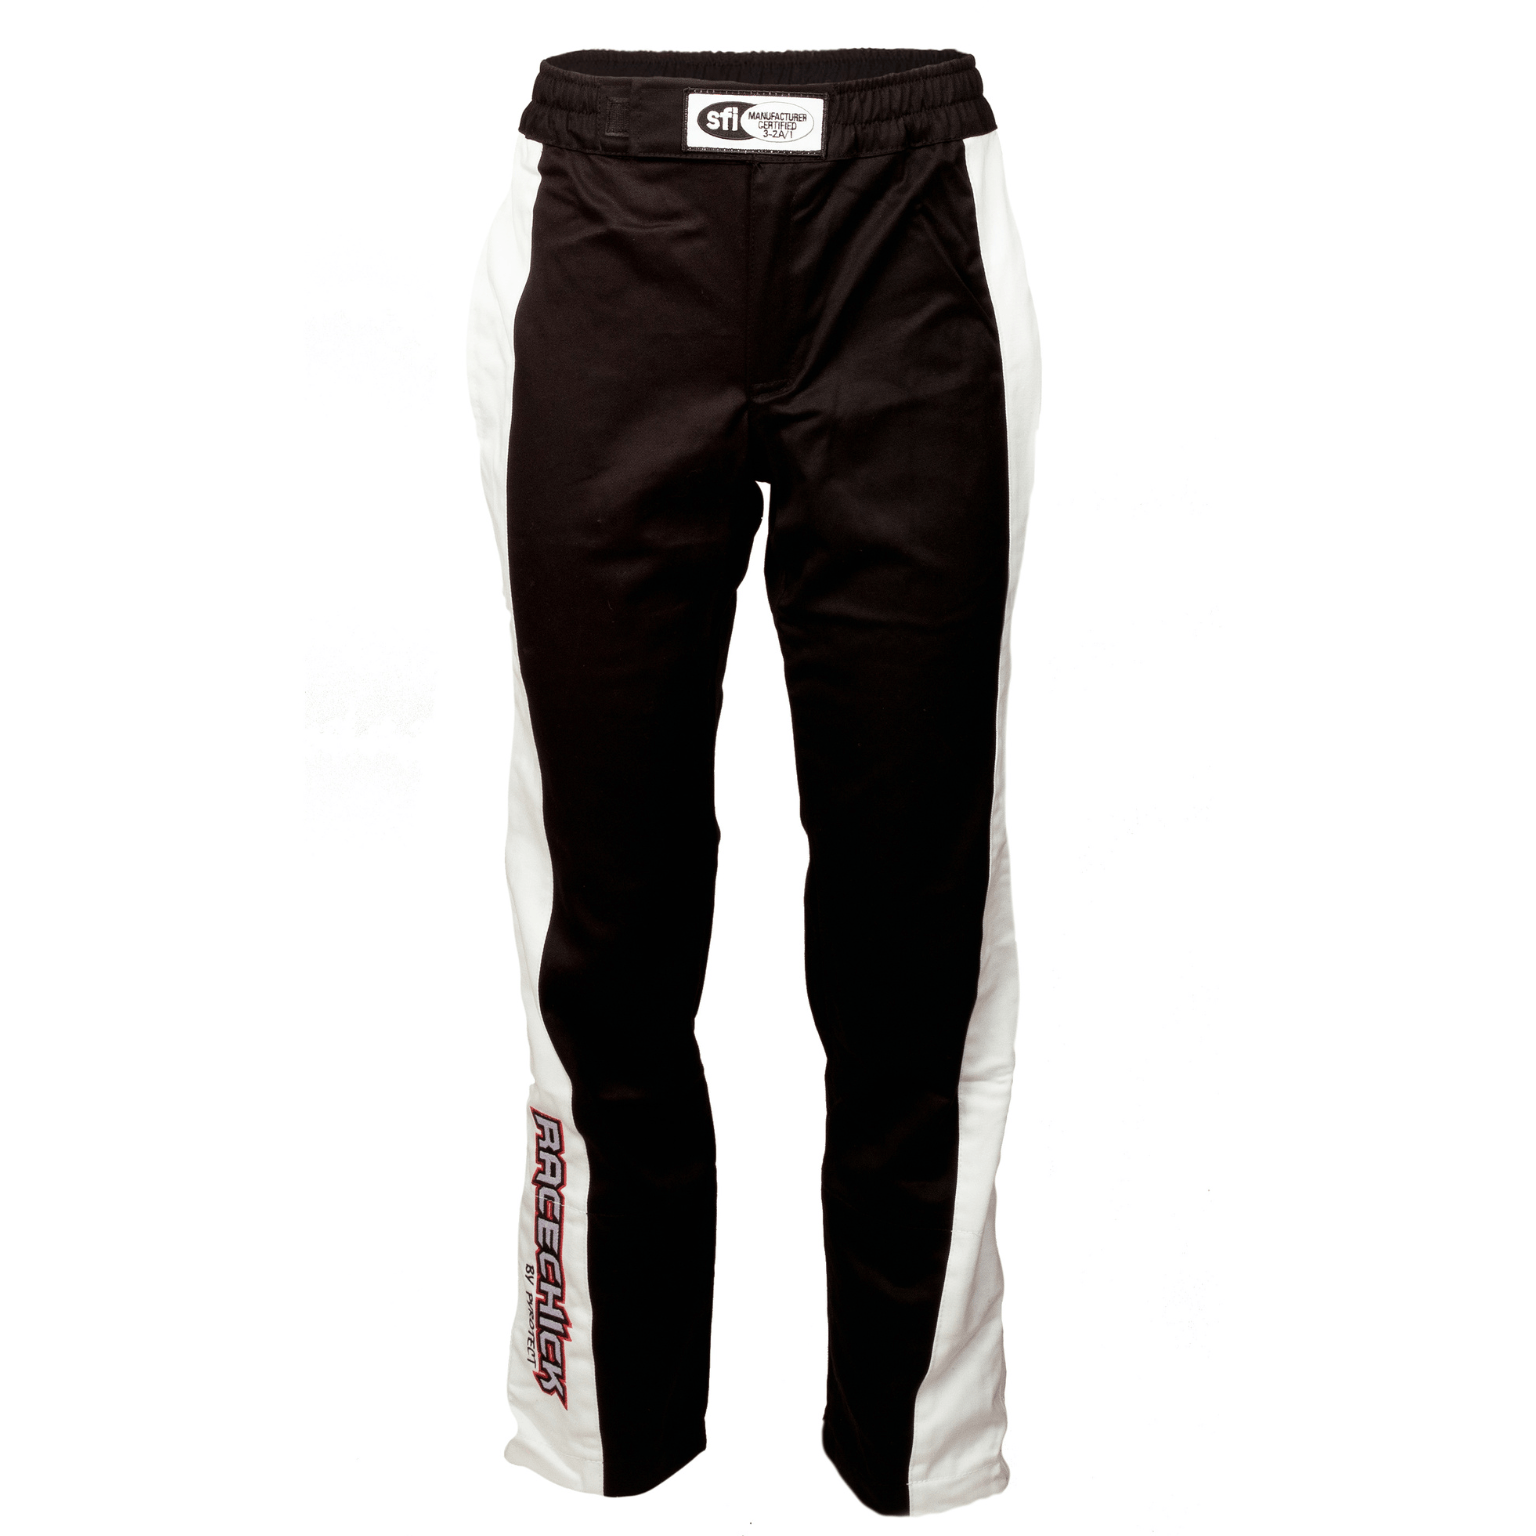 Racechick 'FIERCE' SFI 3.2A/5 Pants (Black/White)